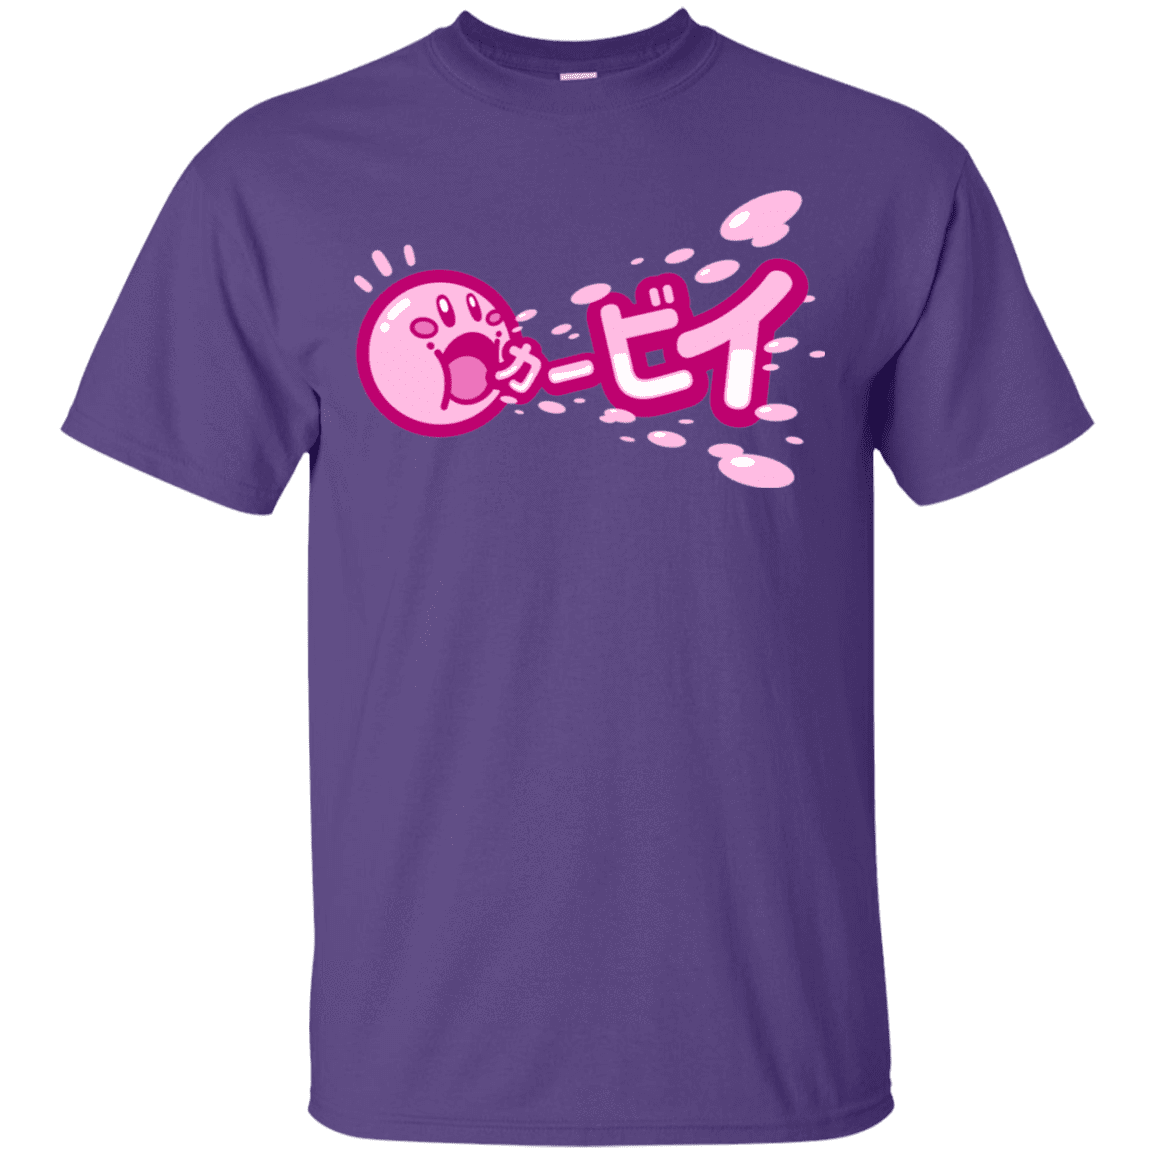 T-Shirts Purple / S Kabi T-Shirt